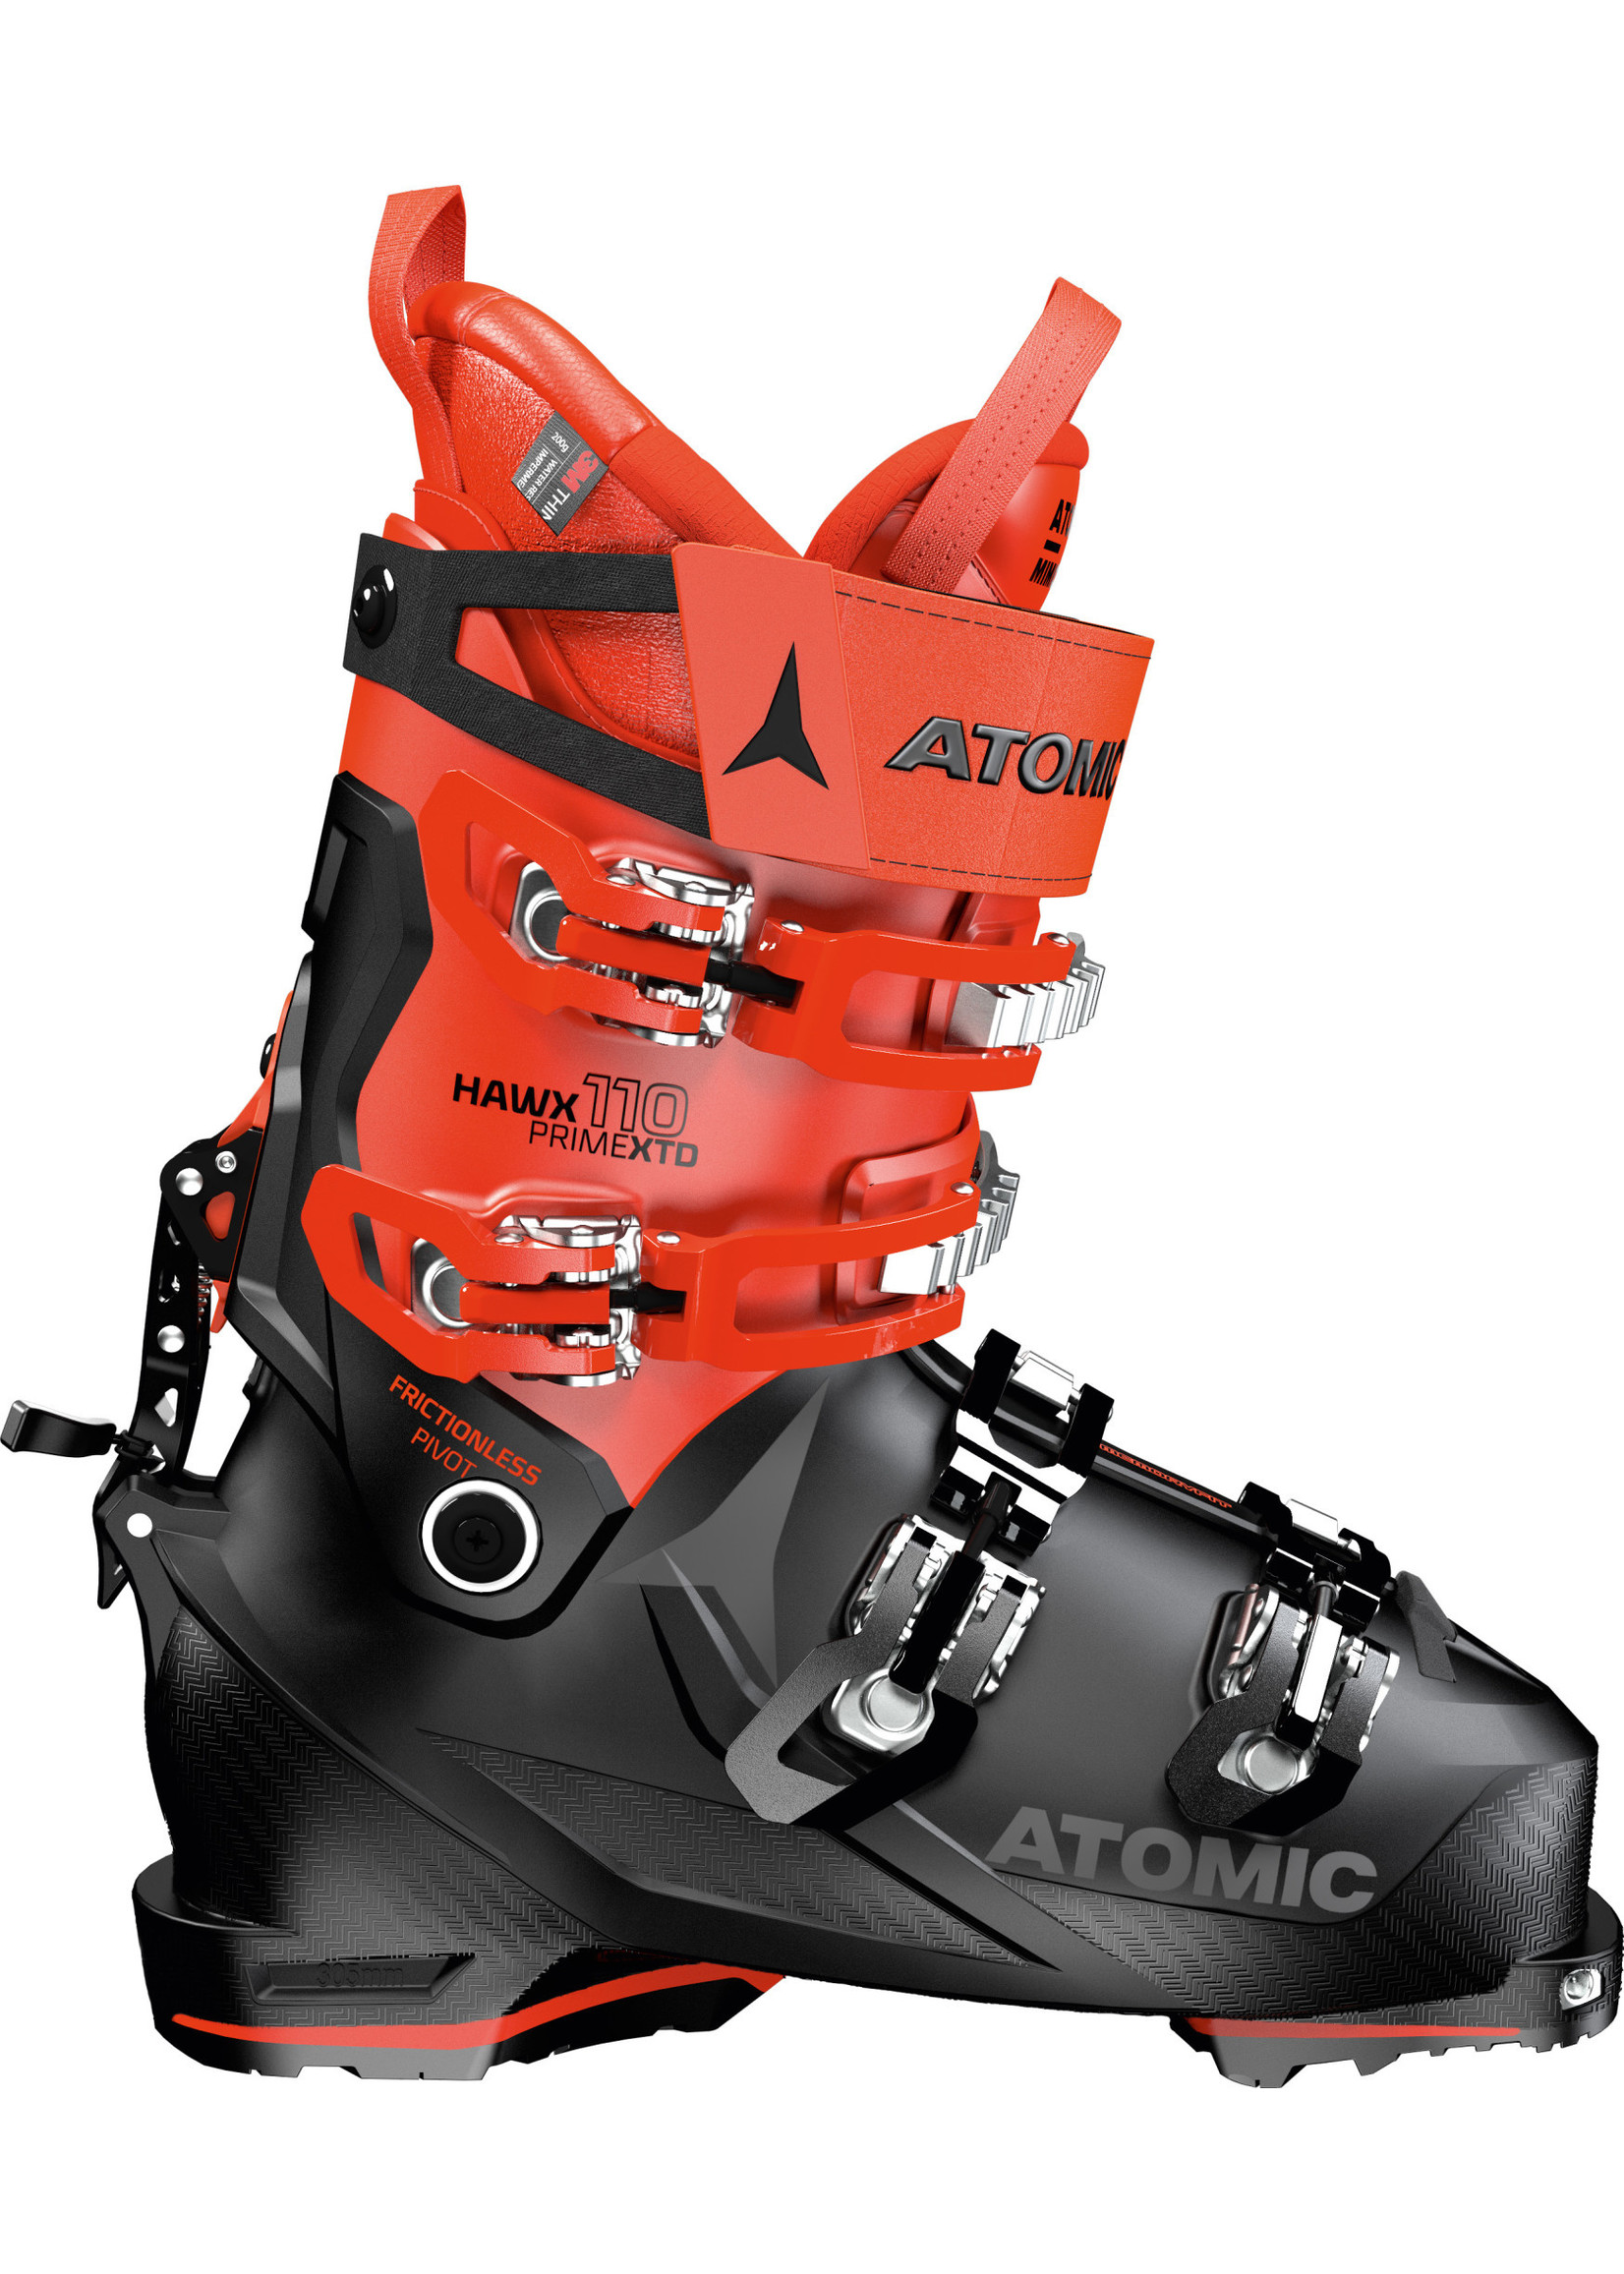 Atomic Touring Ski Boot Hawx Prime XTD 110